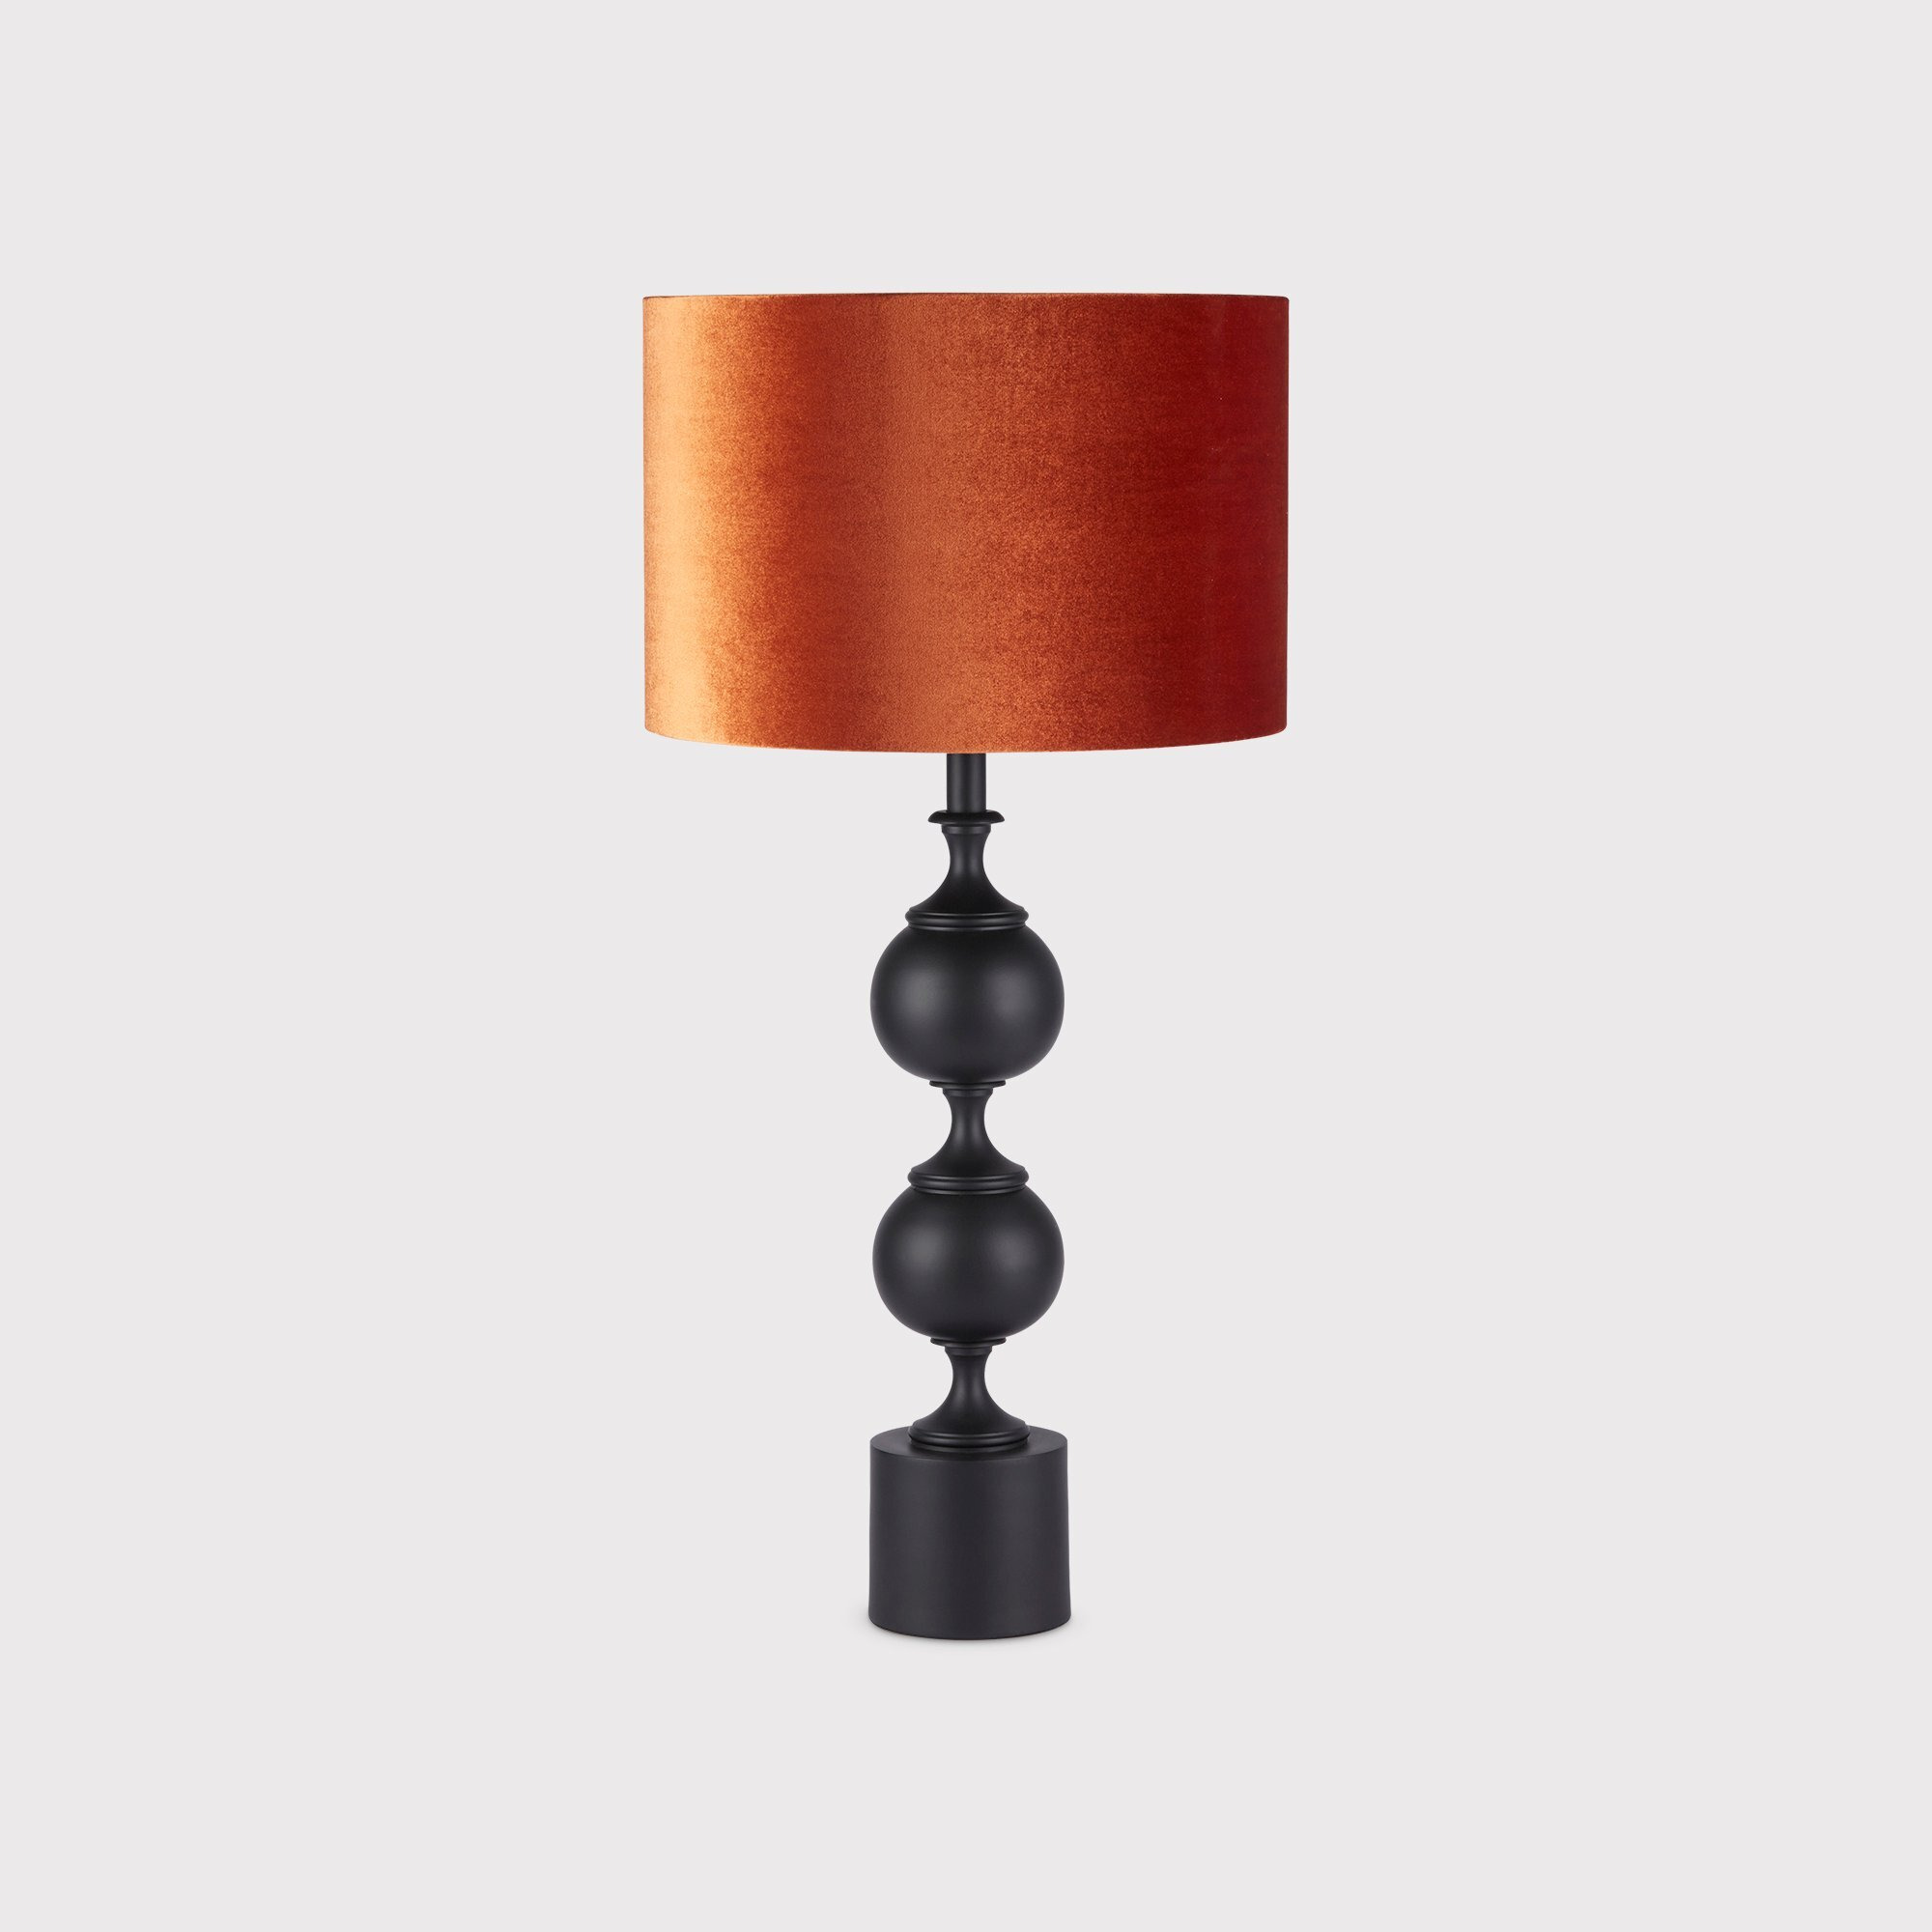 Velvet Terra Table Lamp, Orange Metal - Barker & Stonehouse - image 1